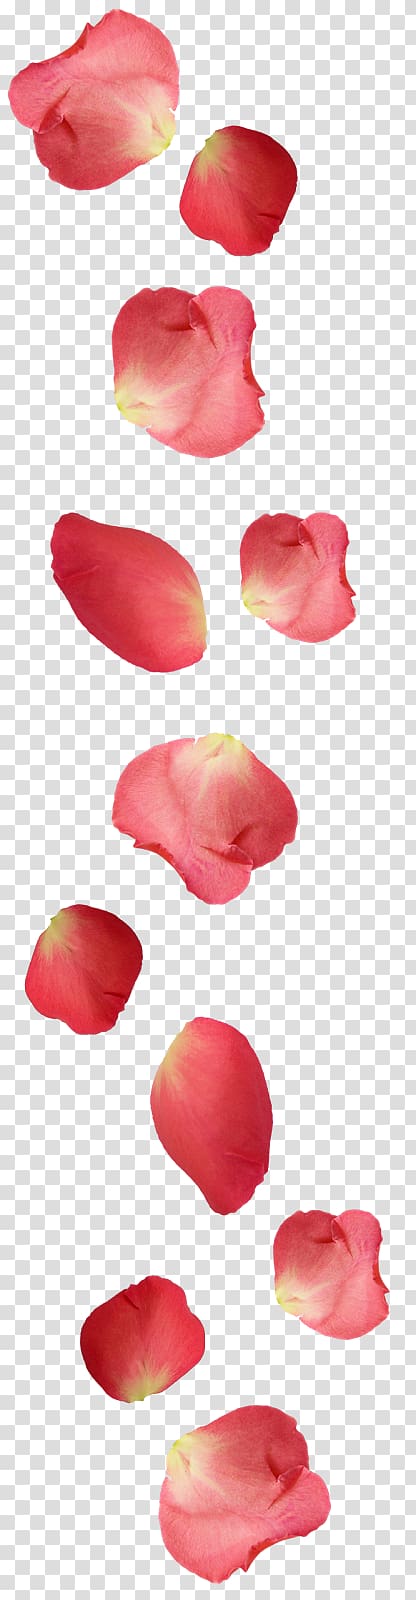 Petal Rose Ugg boots Flower, rose transparent background PNG clipart